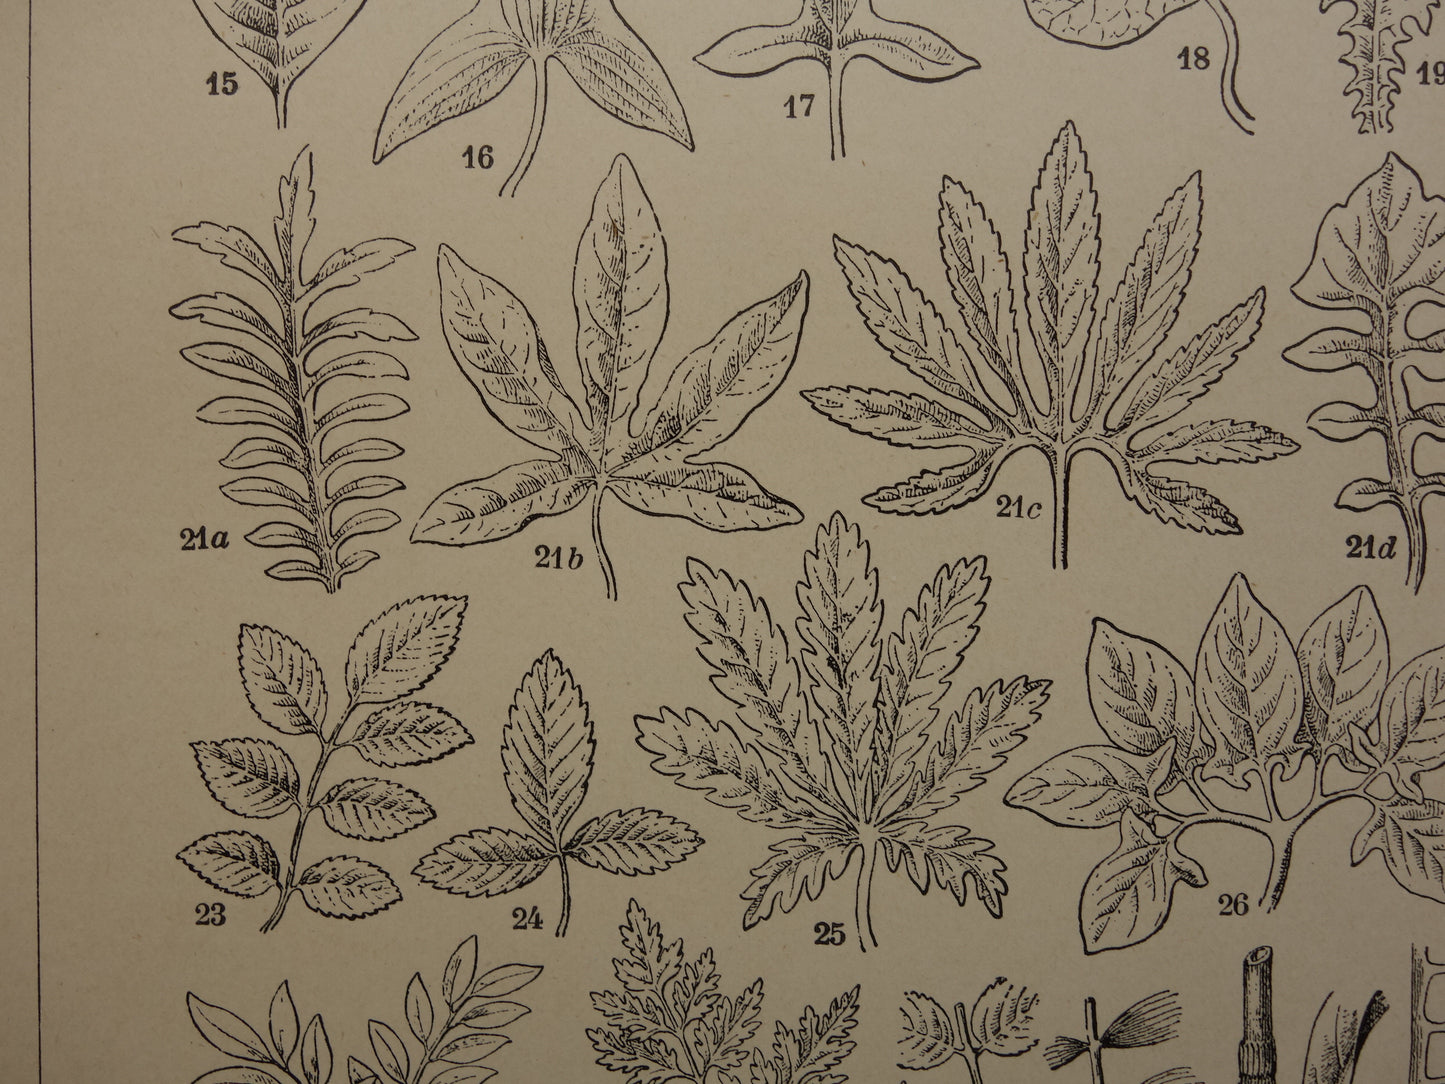 BLADEREN oude botanische prent uit het jaar 1906 originele antieke Blad Bloemblad Bladvormen illustratie print